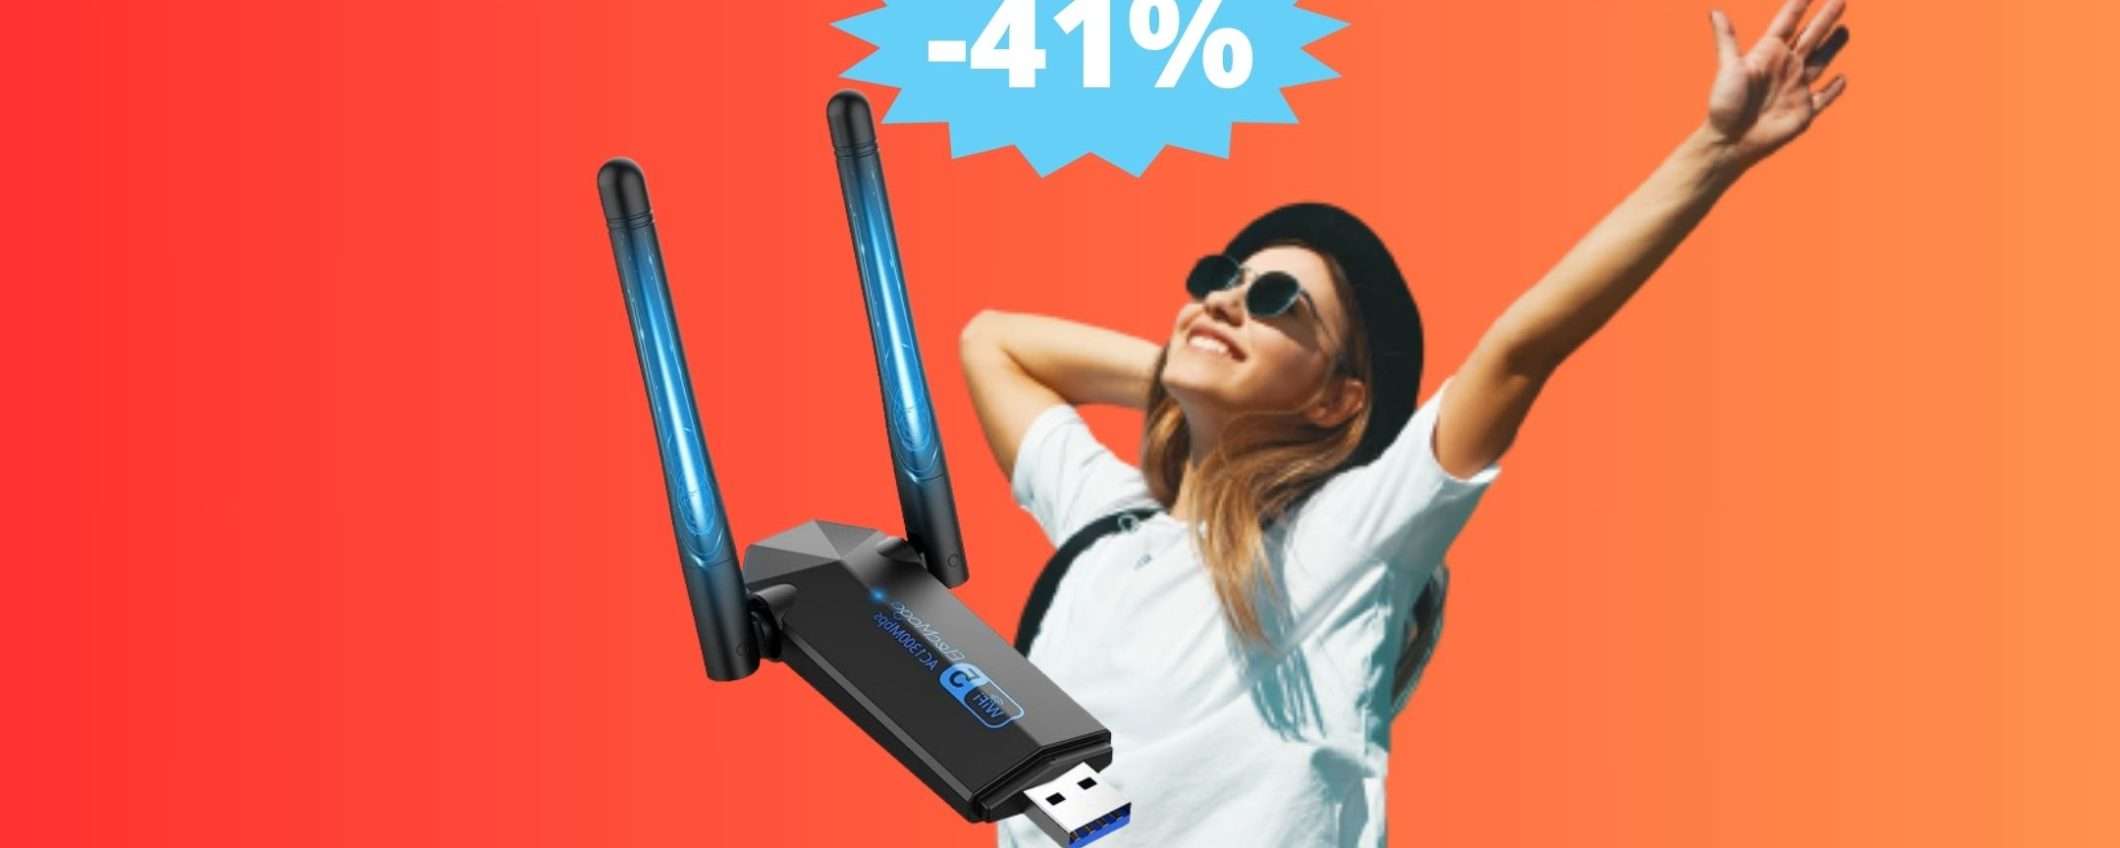 Chiavetta WiFi per PC: sconto ECCEZIONALE del 41% su Amazon